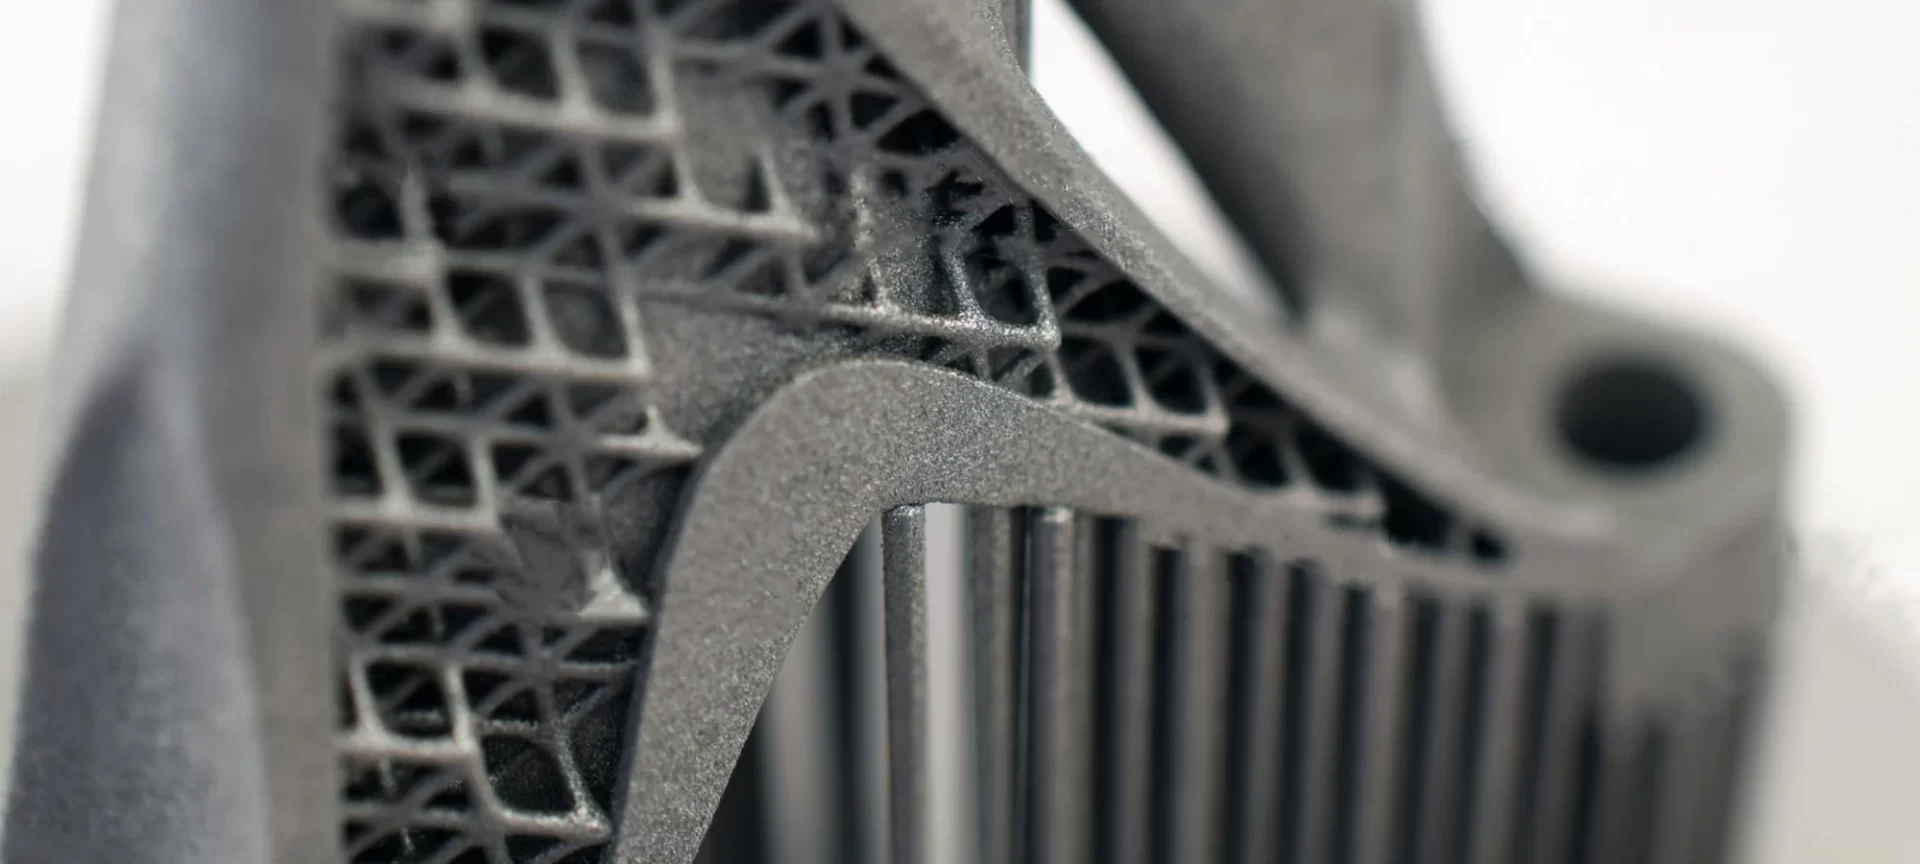 3D printed Metal